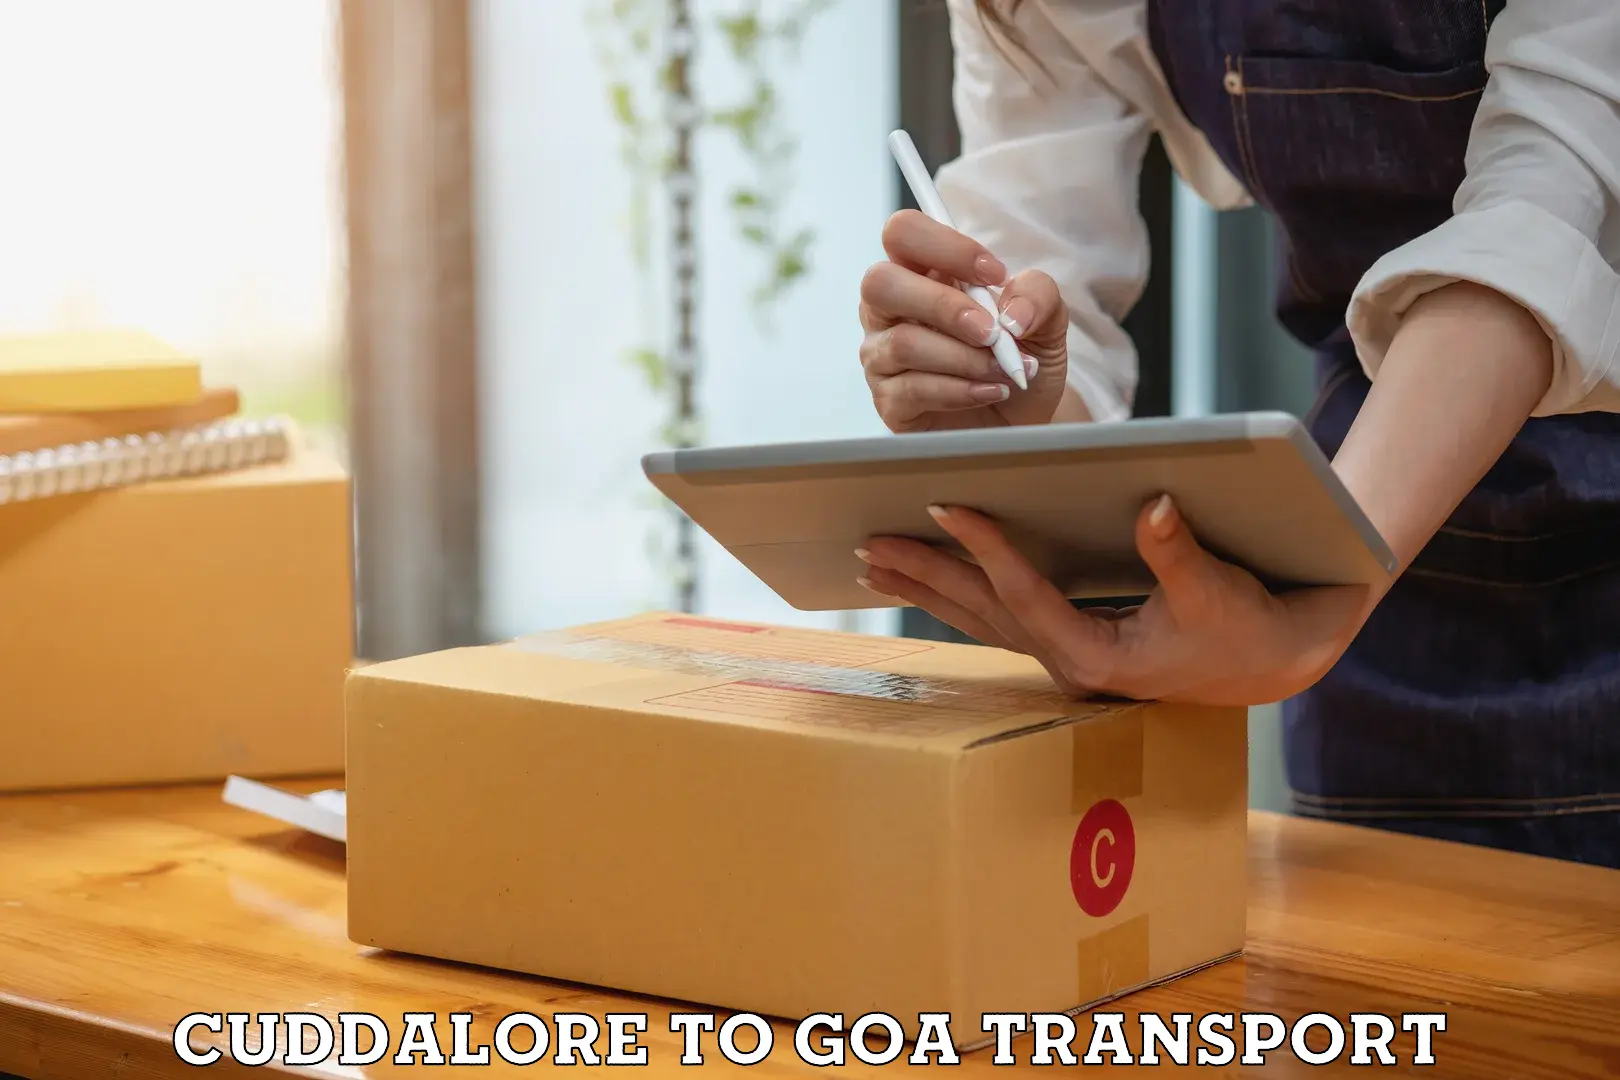 Daily transport service Cuddalore to Mormugao Port